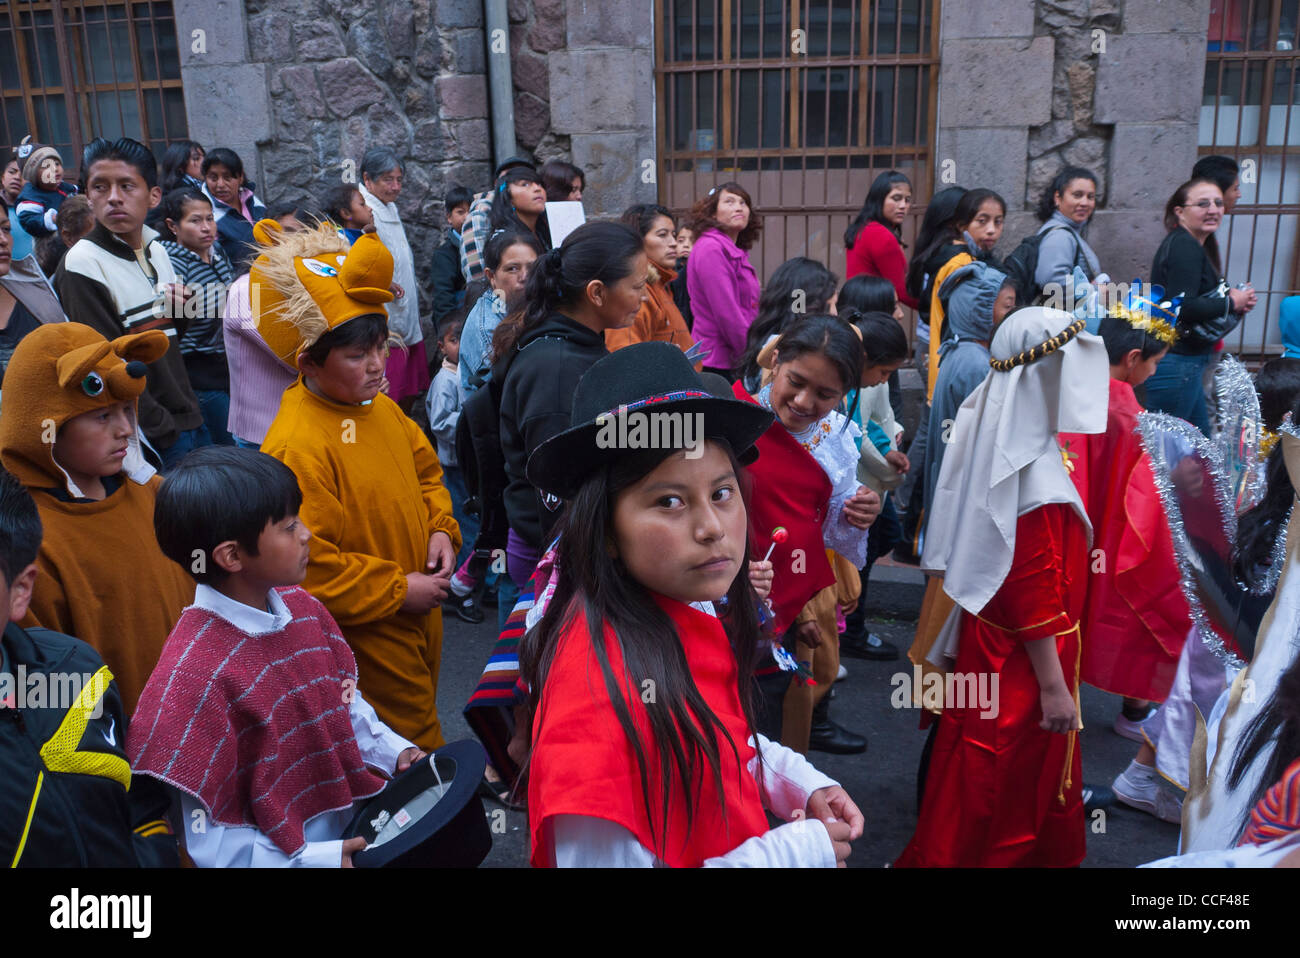 Ein 12-13 jährigen alten hispanischen Mädchen in Tracht gekleidet geht an die jährlichen Kinder Parade am Heiligabend in Quito, Ecuador. Stockfoto